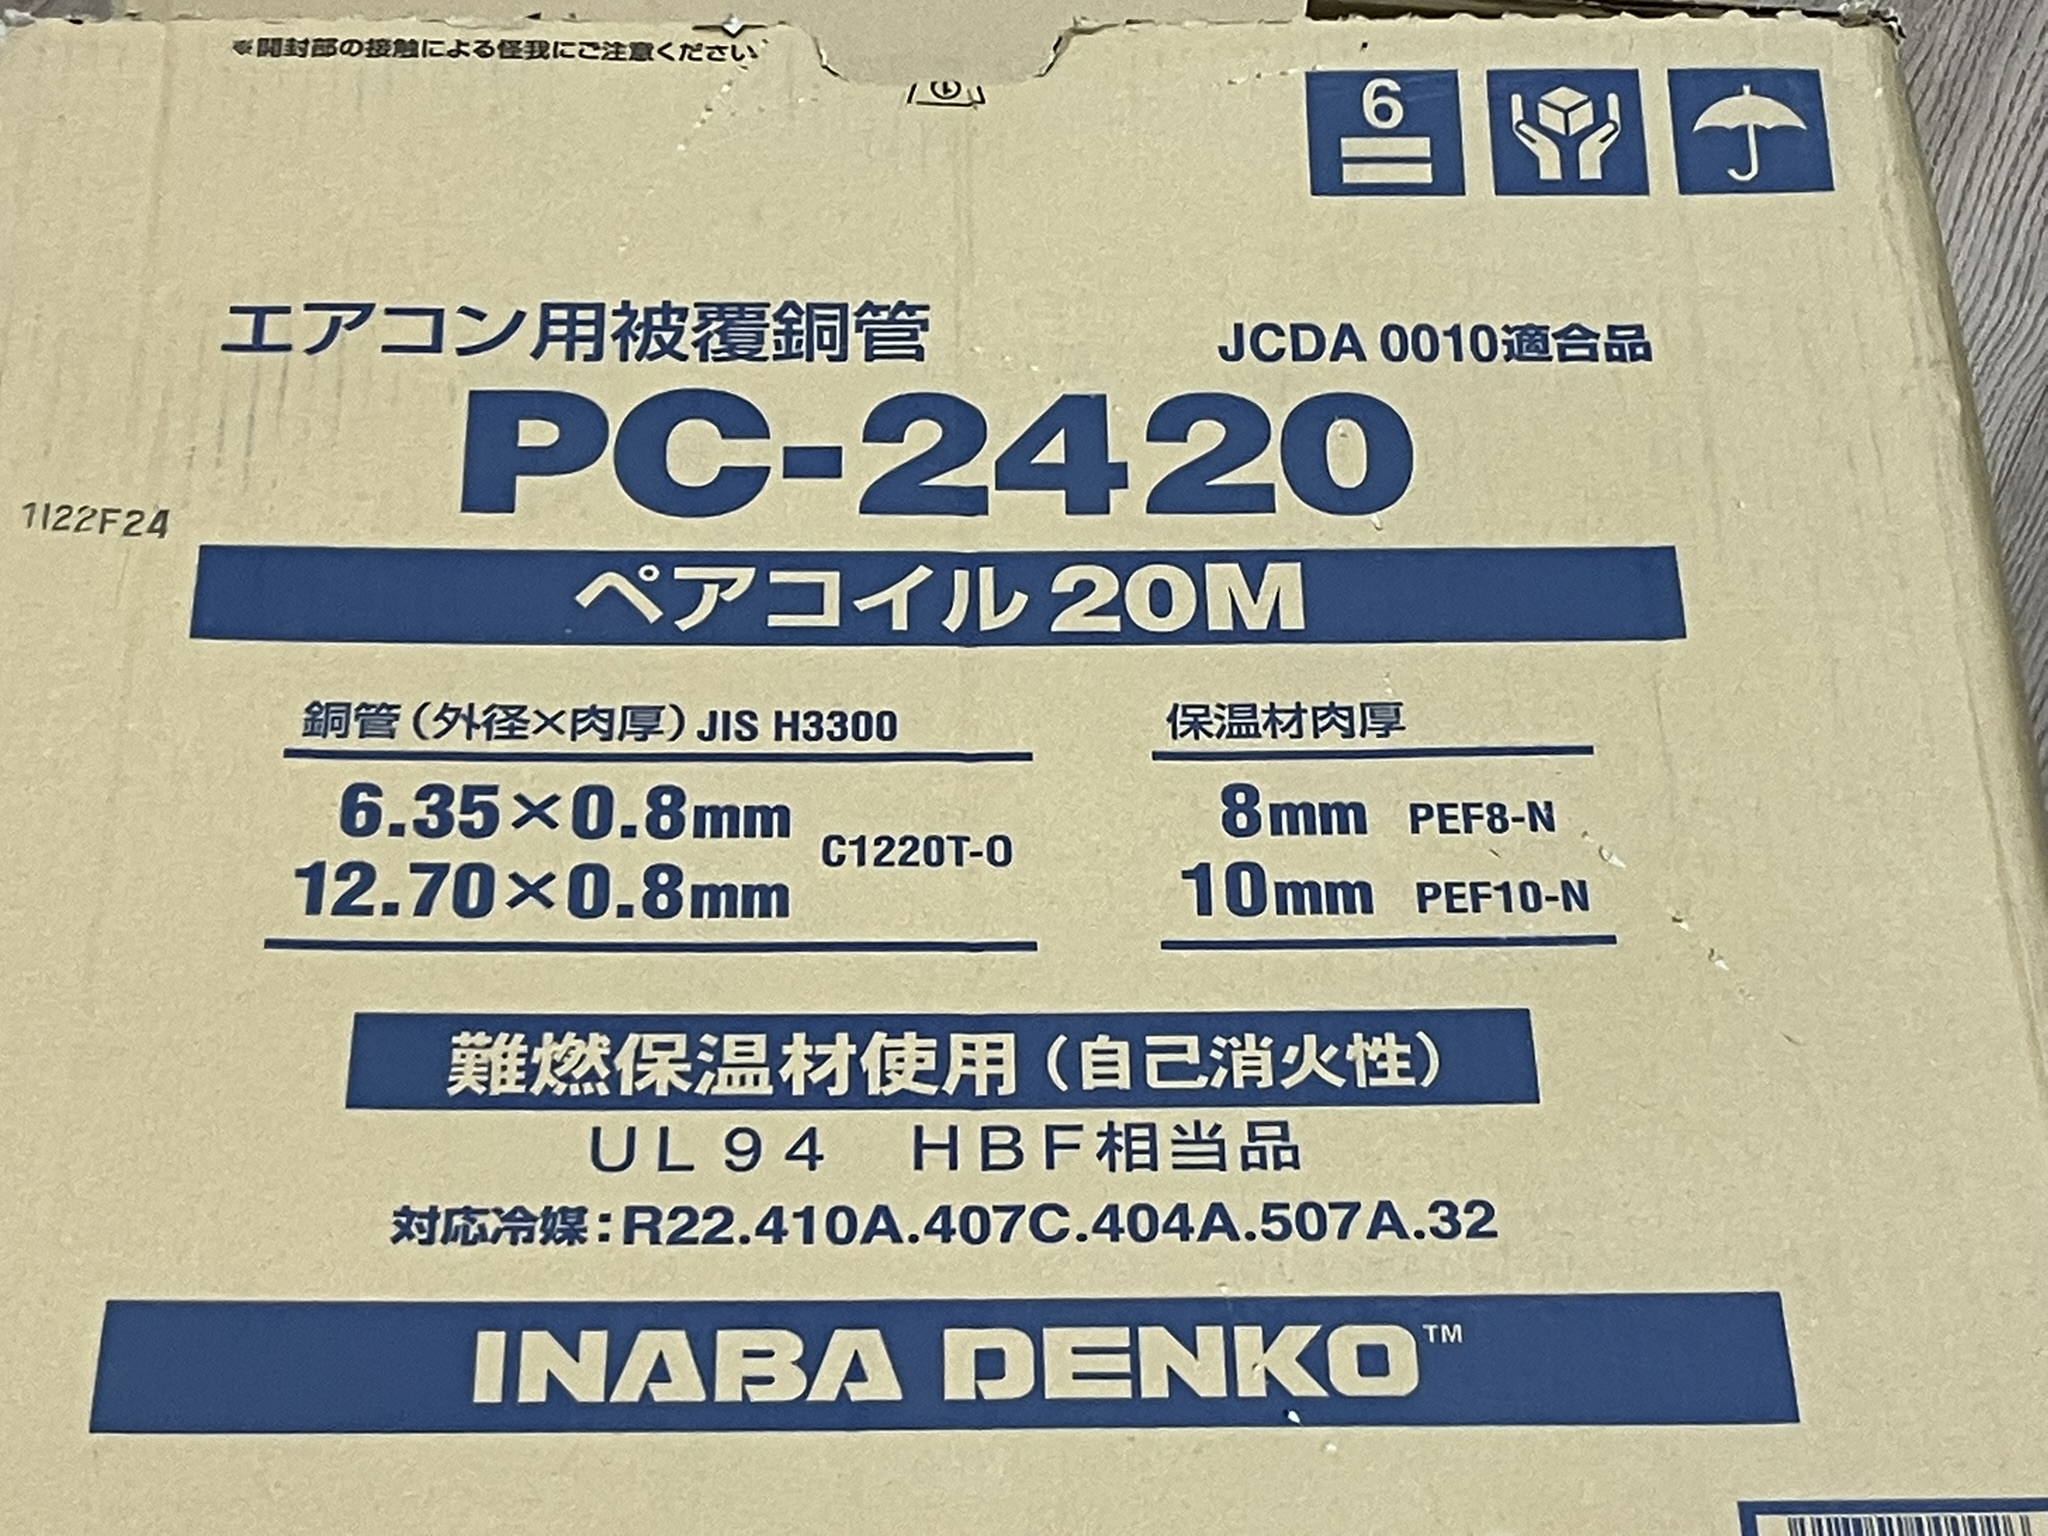 INABA DENKO/因幡電機